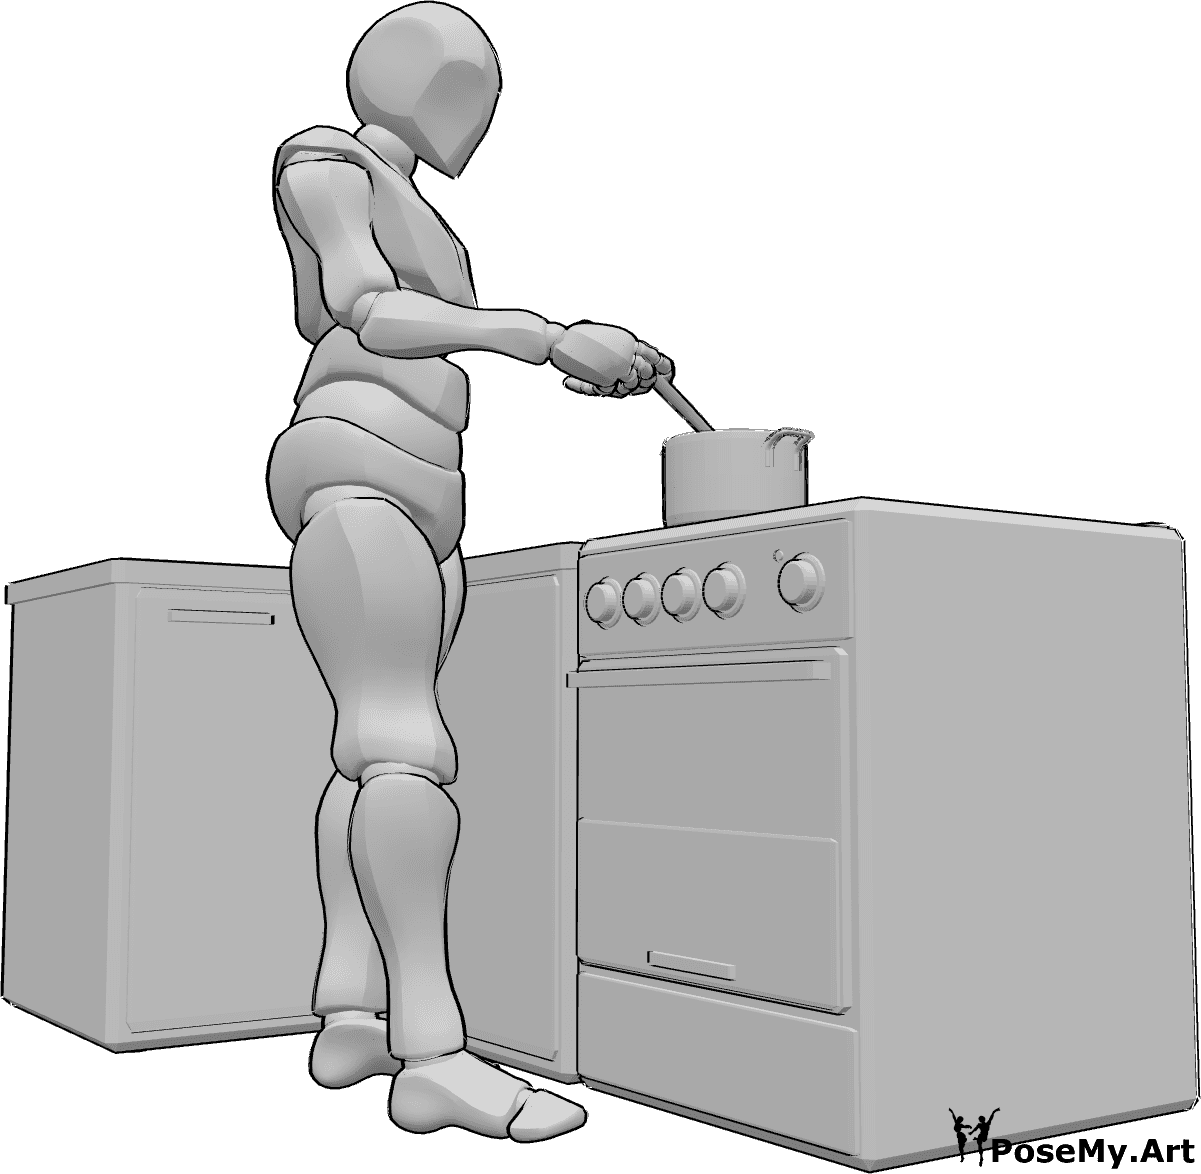 Riferimento alle pose- Posa maschile in cucina - L'uomo è in piedi, sta cucinando qualcosa in una pentola e sta mescolando con un cucchiaio di legno.